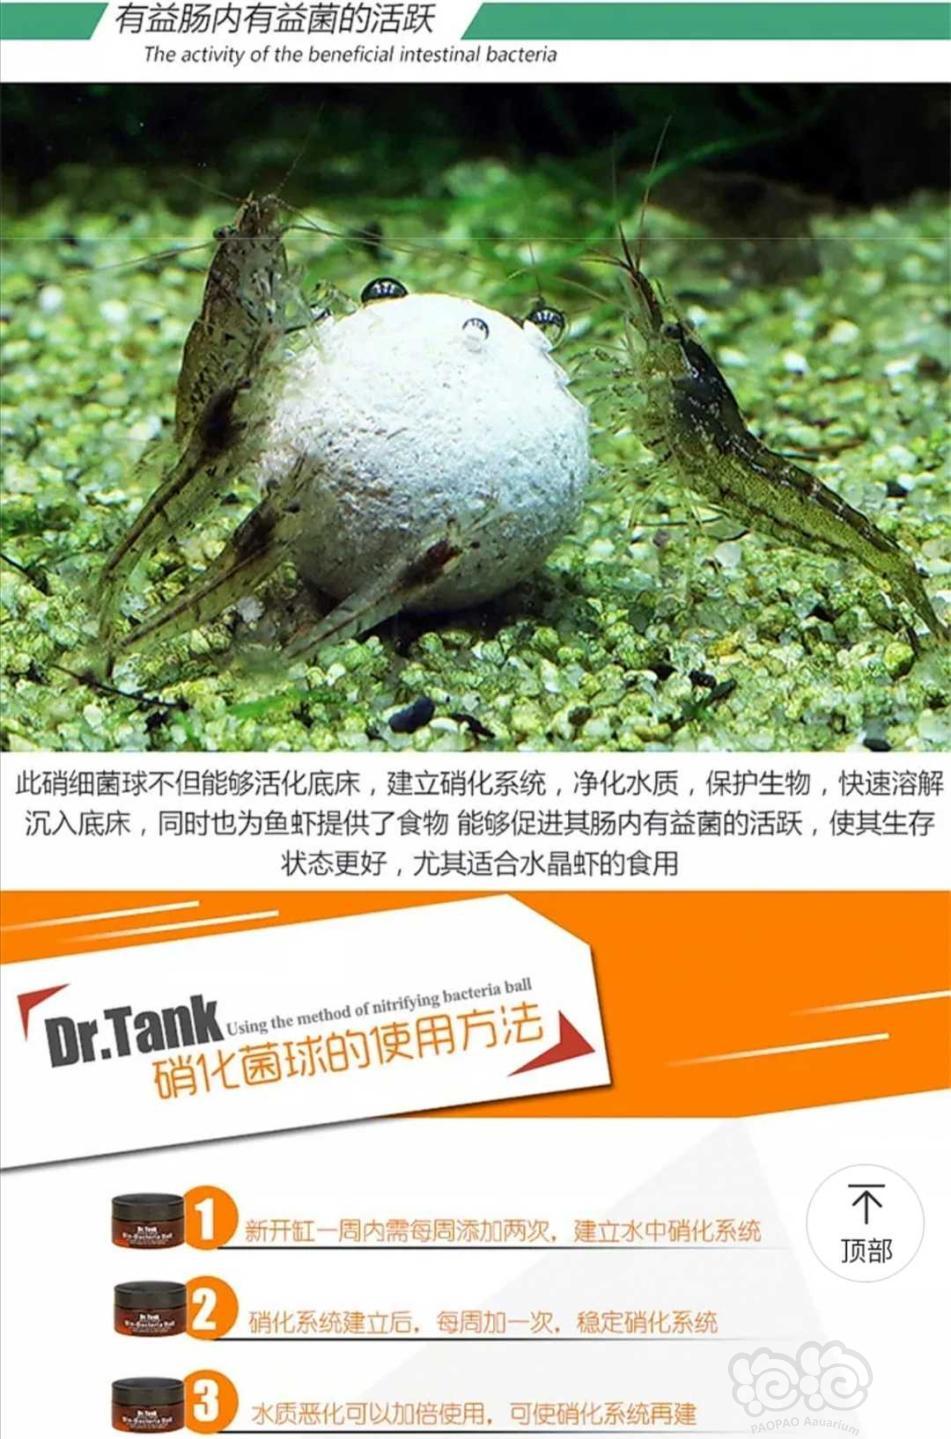 【用品】2019-11-13#RMB拍卖坦克二代硝化细菌球三粒装*3盒-图1